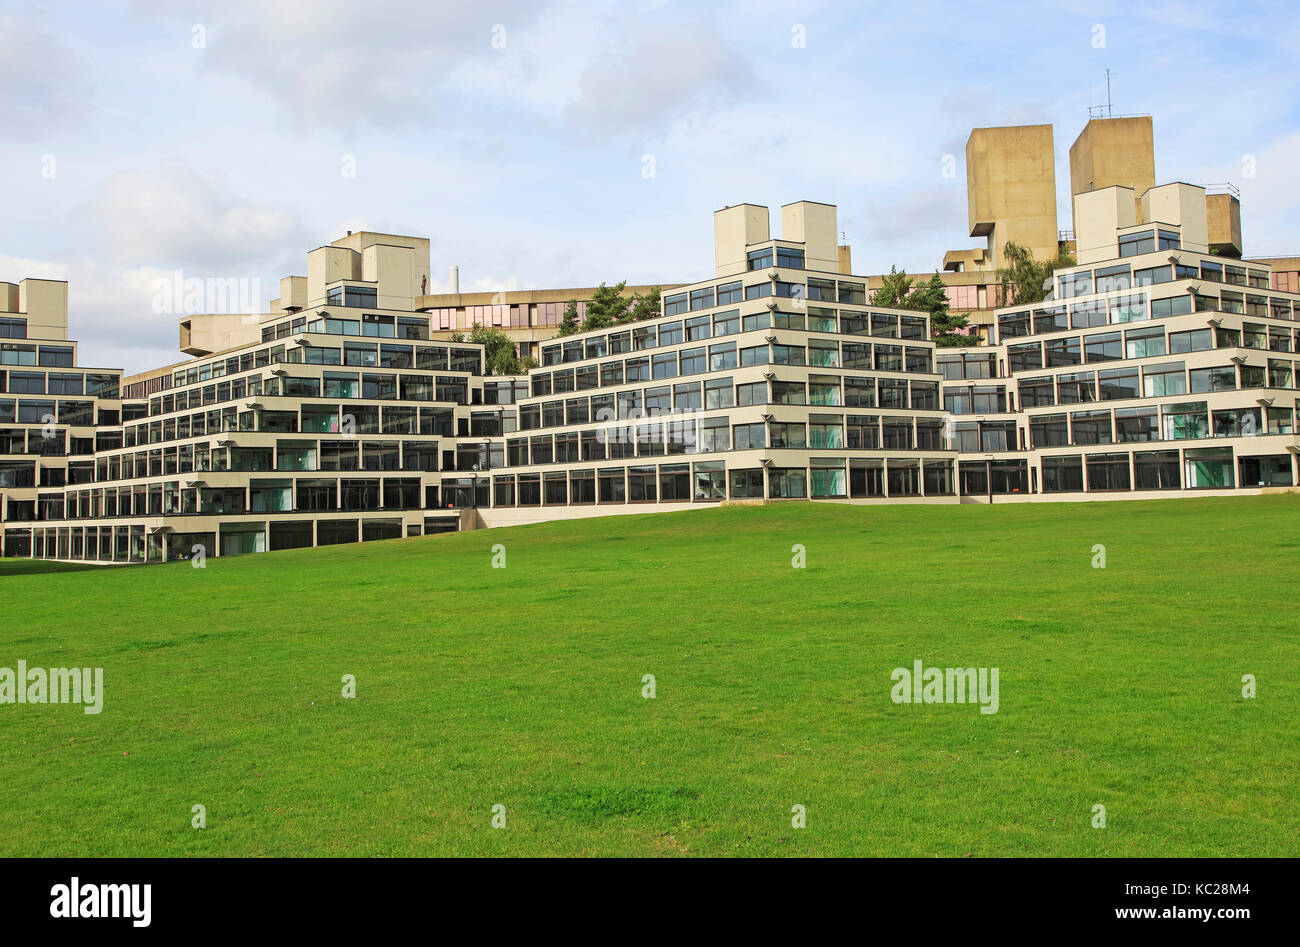 Logement des étudiants des bâtiments connus comme Ziggurats, campus de l'Université d'East Anglia, Norwich, Norfolk, England, UK Banque D'Images